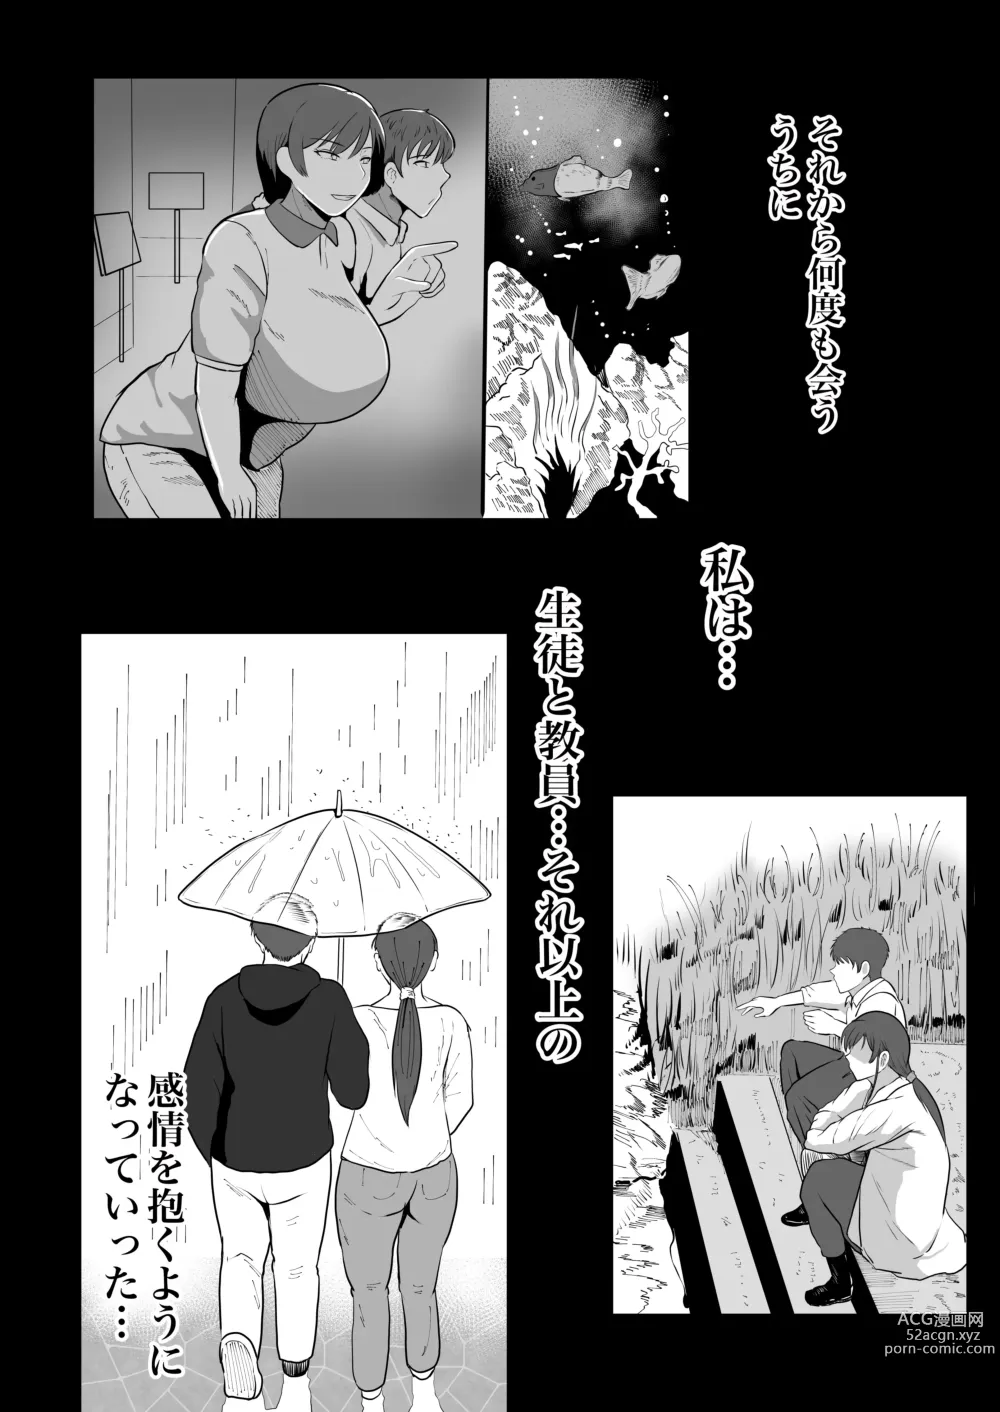 Page 13 of doujinshi Hoken no Sensei Shinobu 37-sai